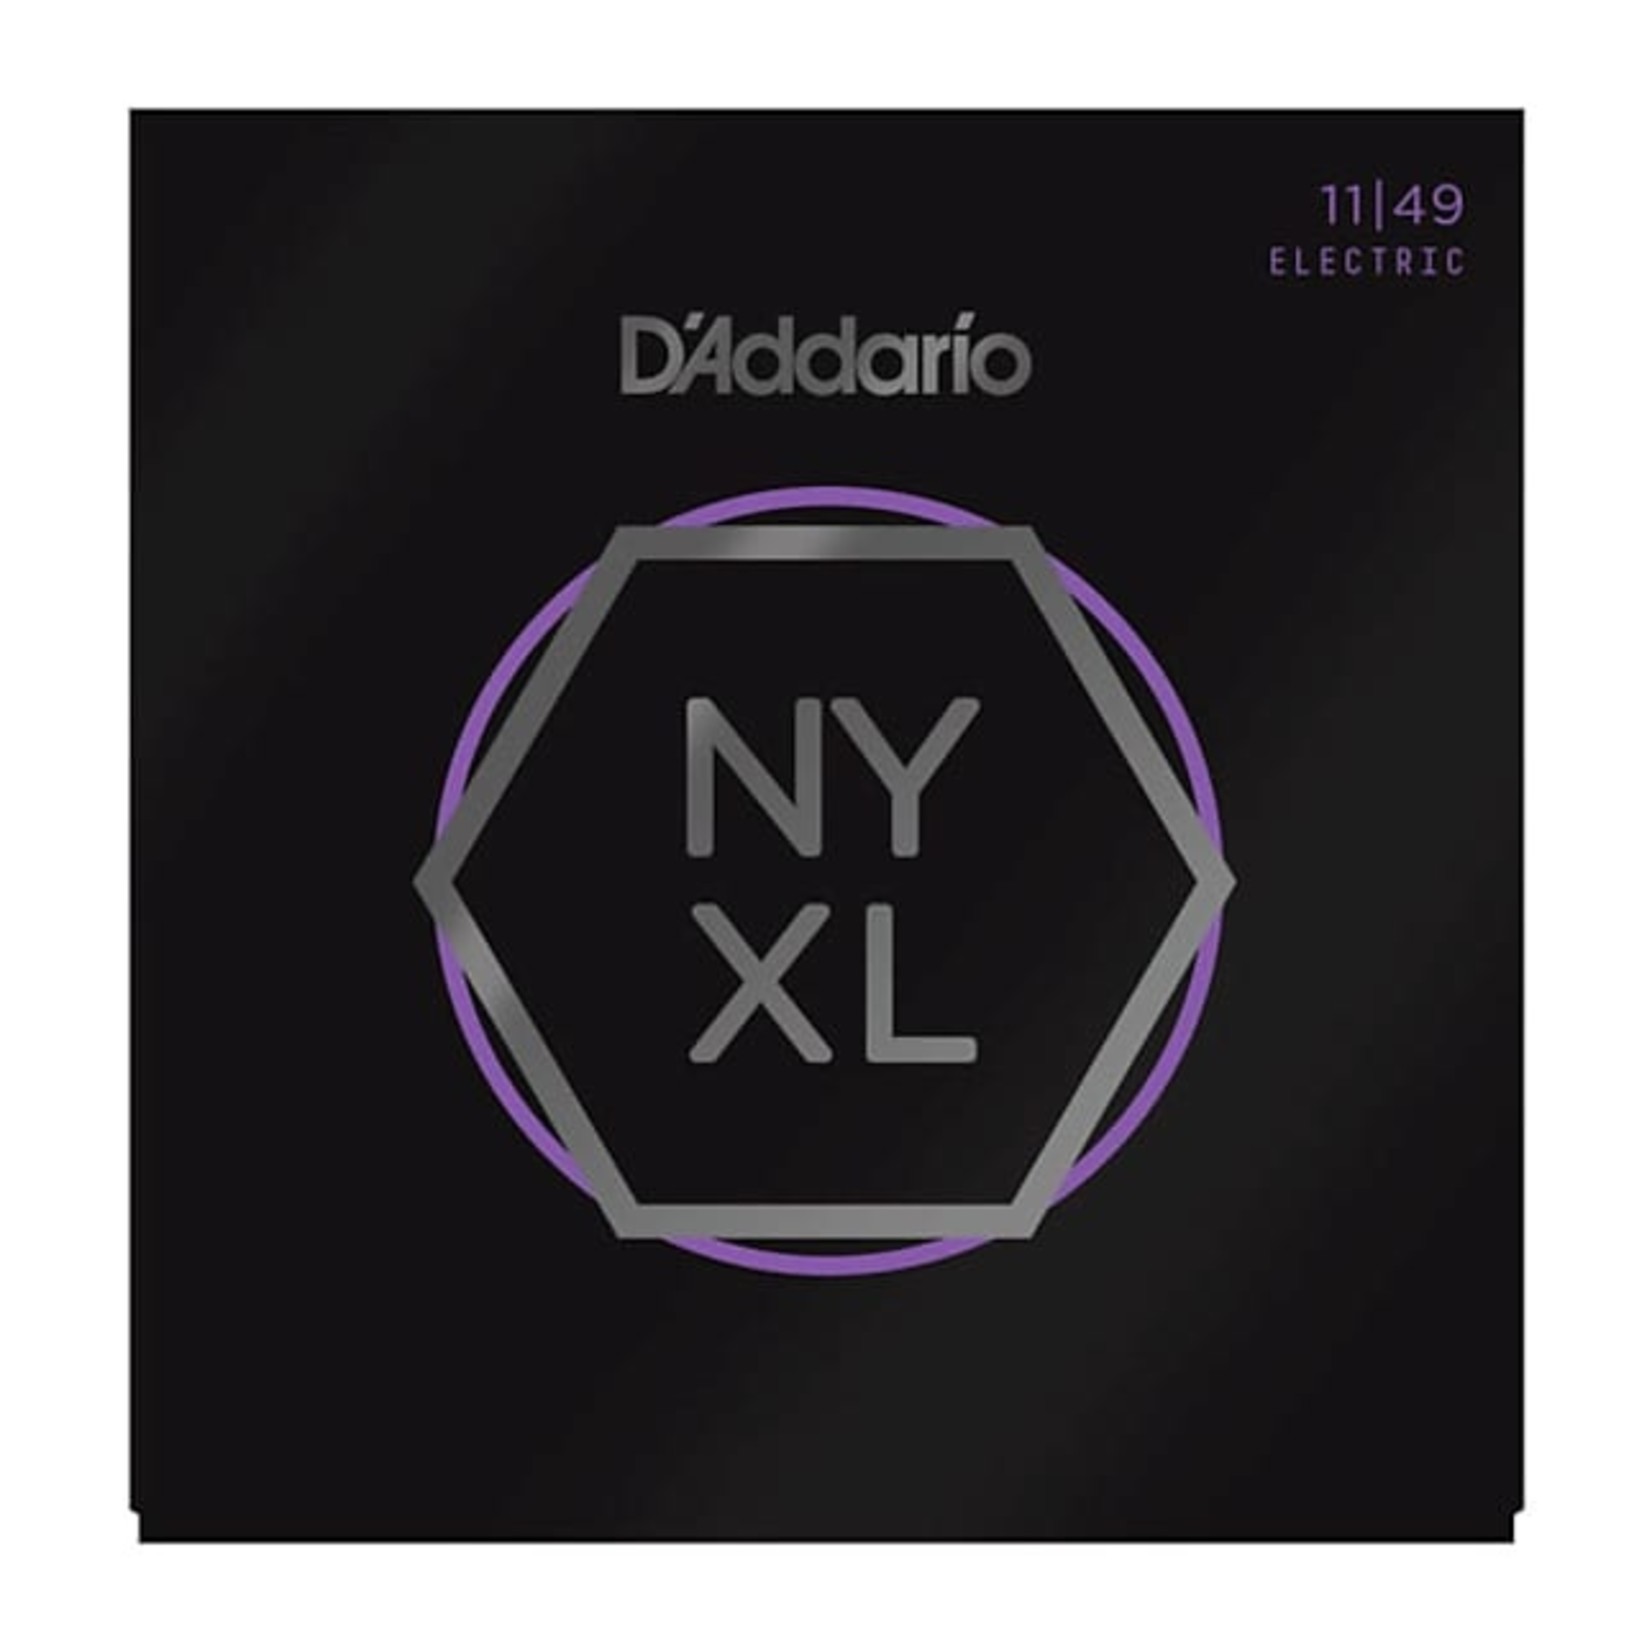 D'Addario D'Addario NYXL1149 11-49 Electric Guitar String Set